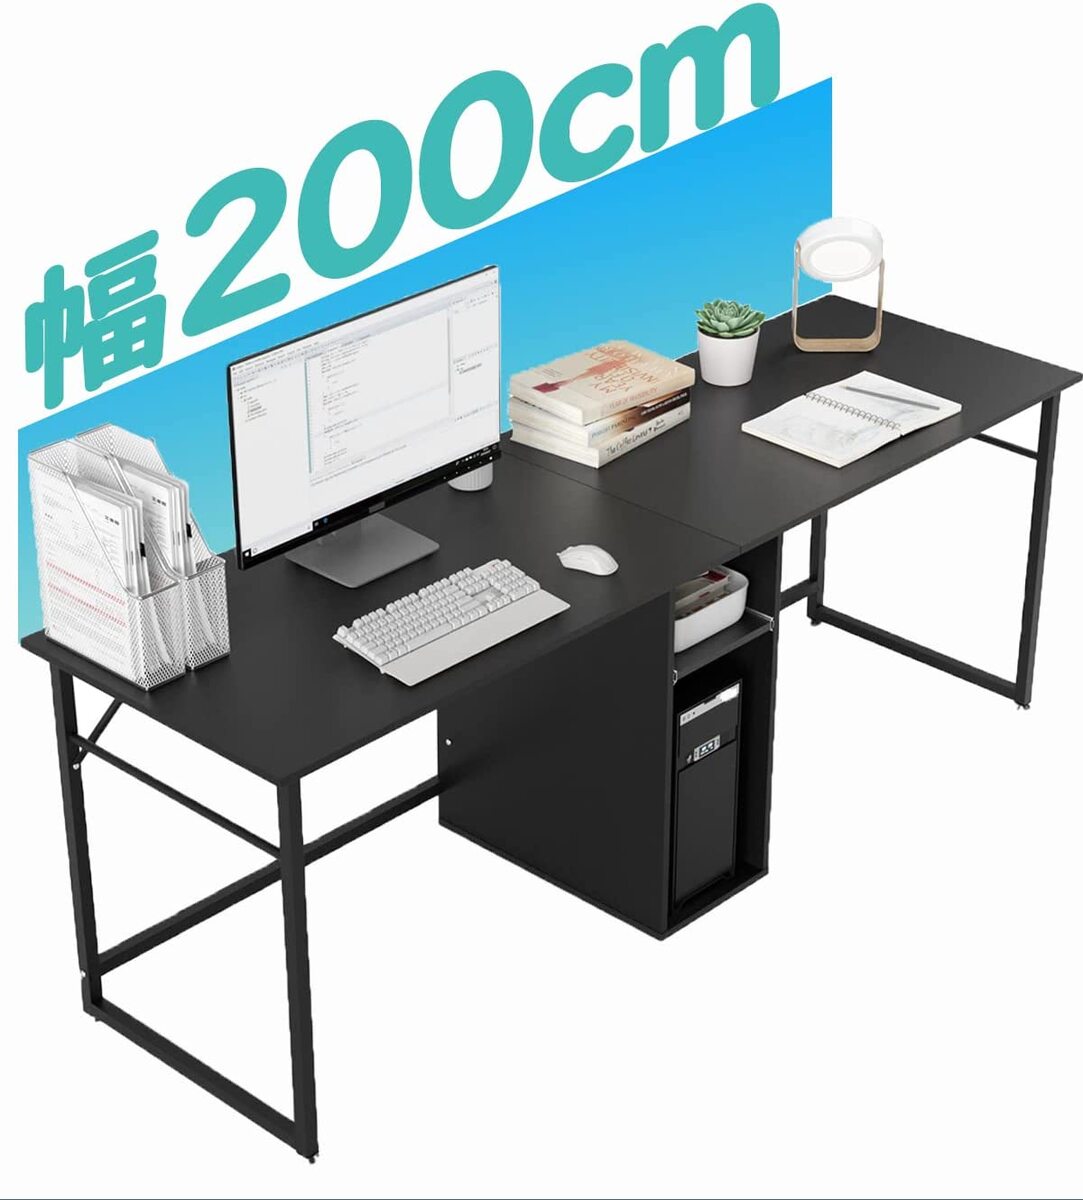 【700円クーポン券付】 パソコンデスク 2人用テレワーク用